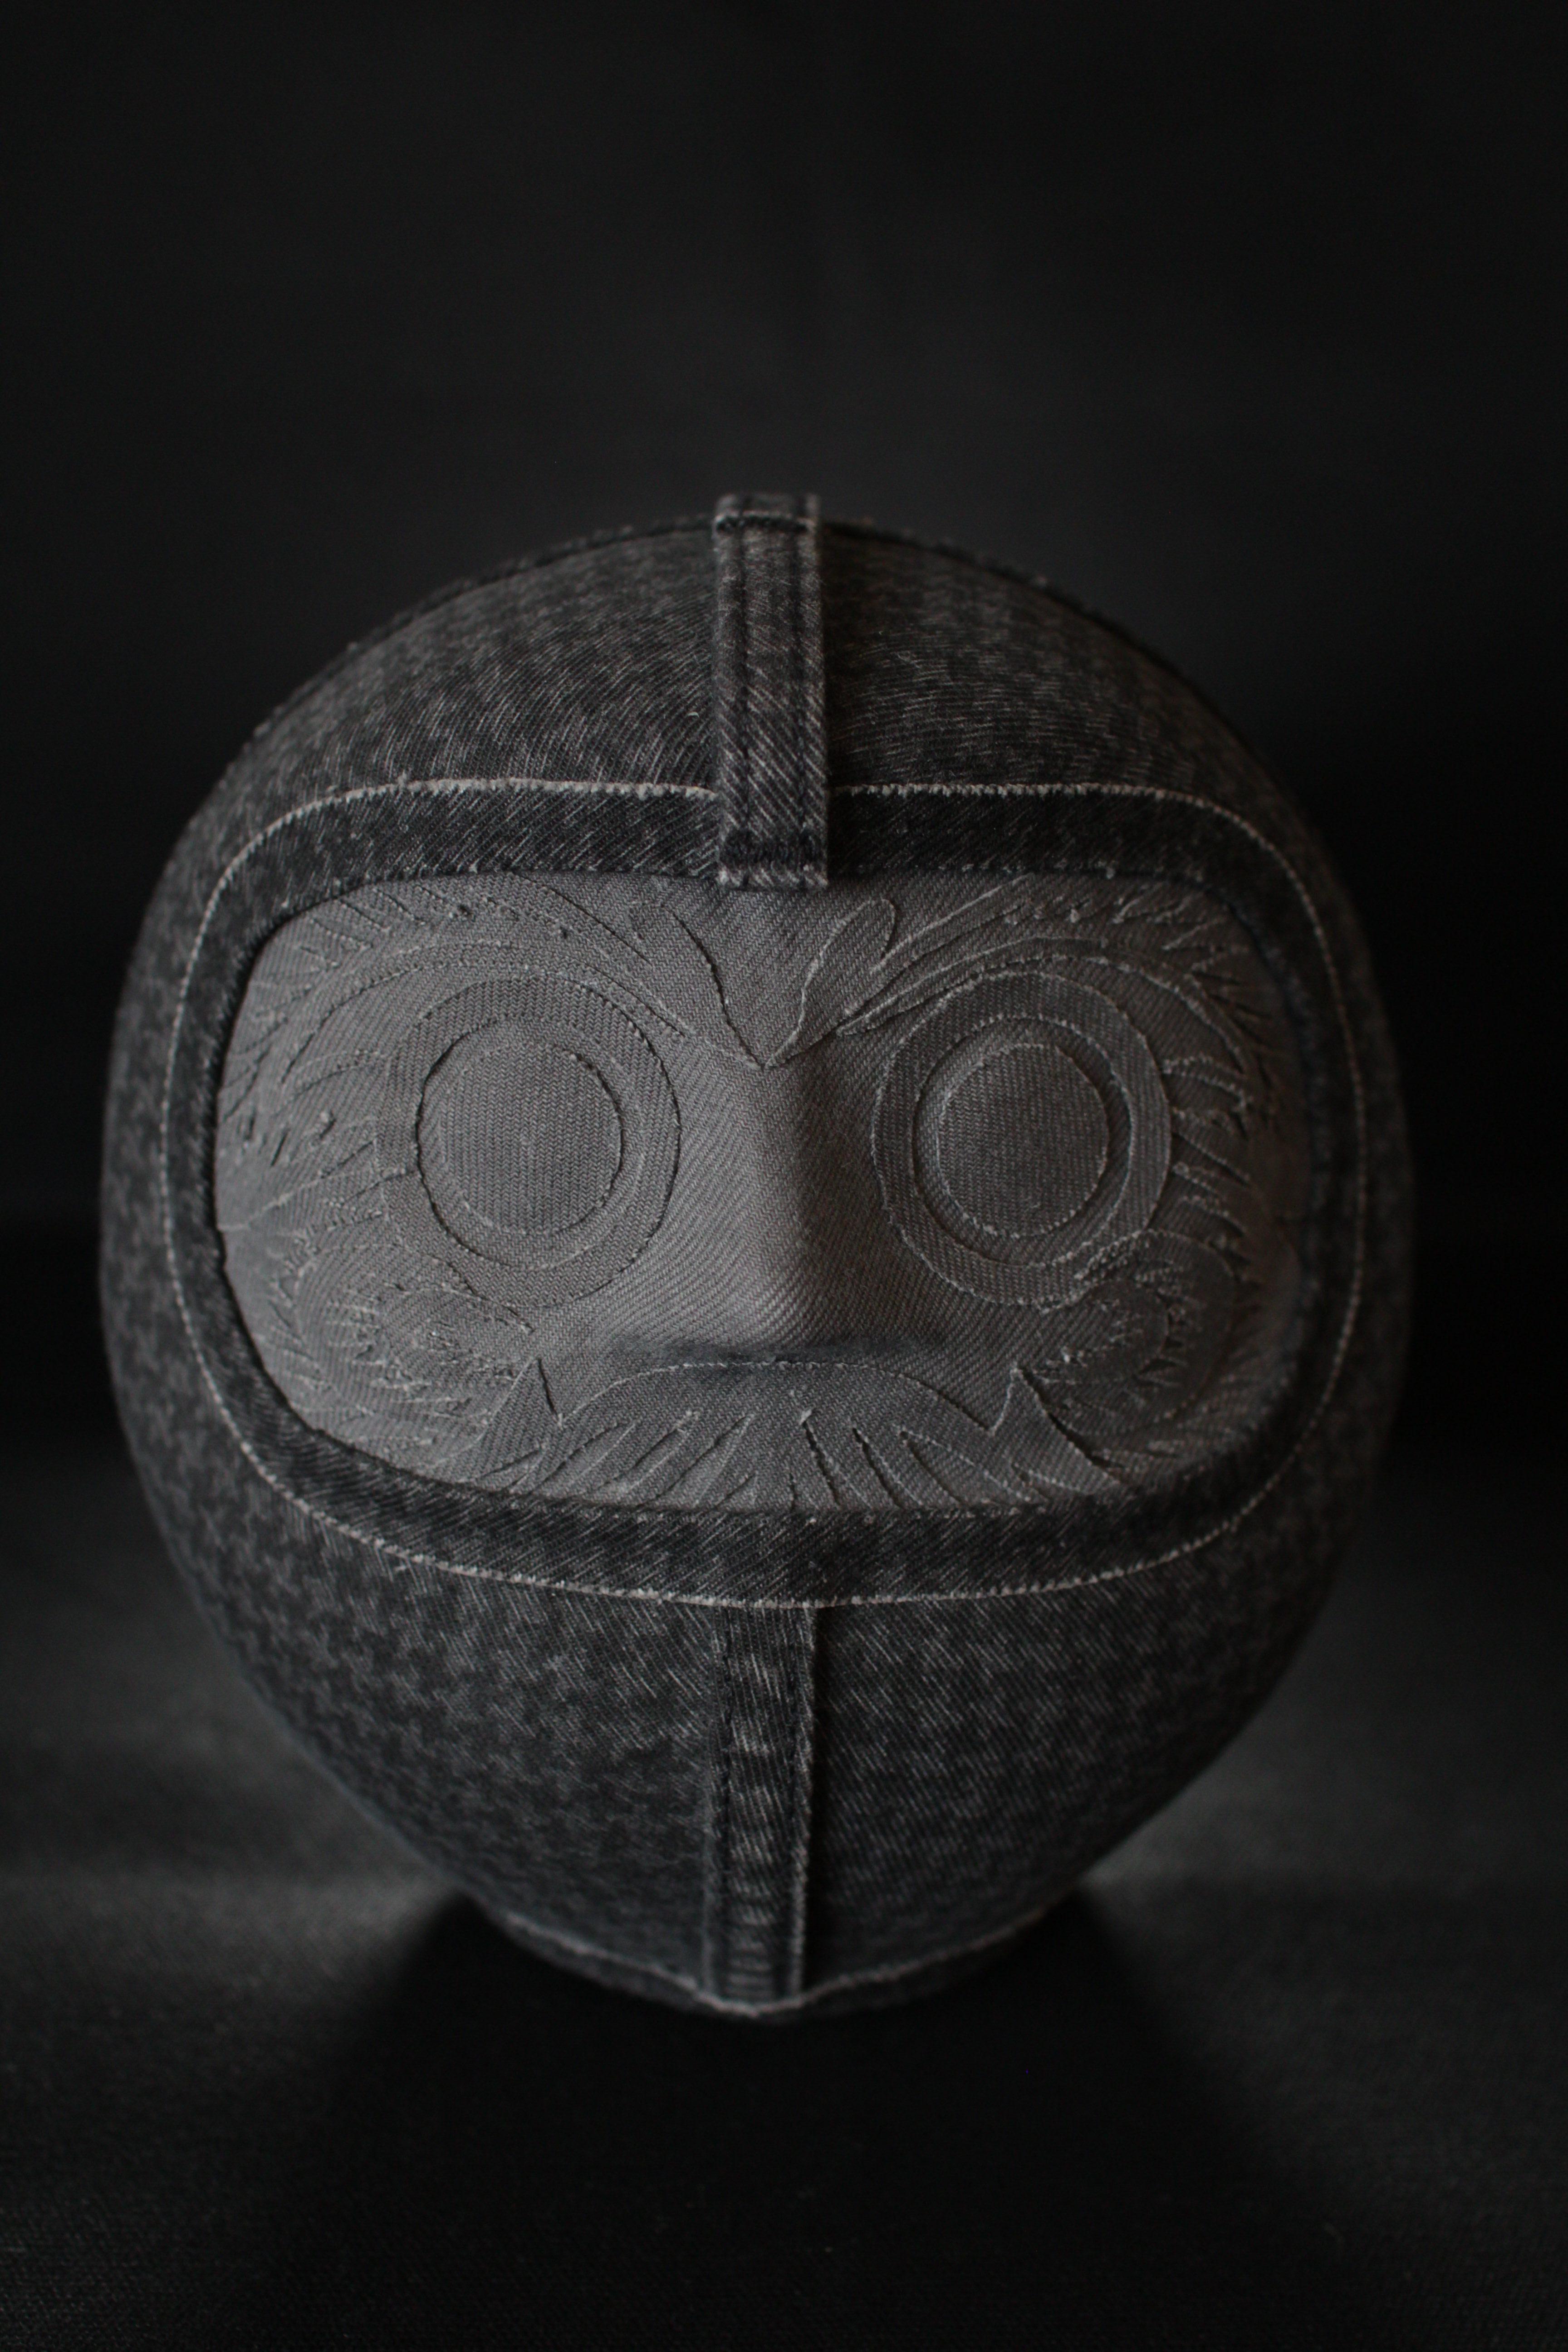 

Daruma est une figurine traditionnelle japonaise qui signifie se relever encore et encore même après être tombé.
Depuis environ 400 ans, elle est aimée comme décoration pour conjurer le mauvais sort ou pour exprimer des souhaits.

La signification